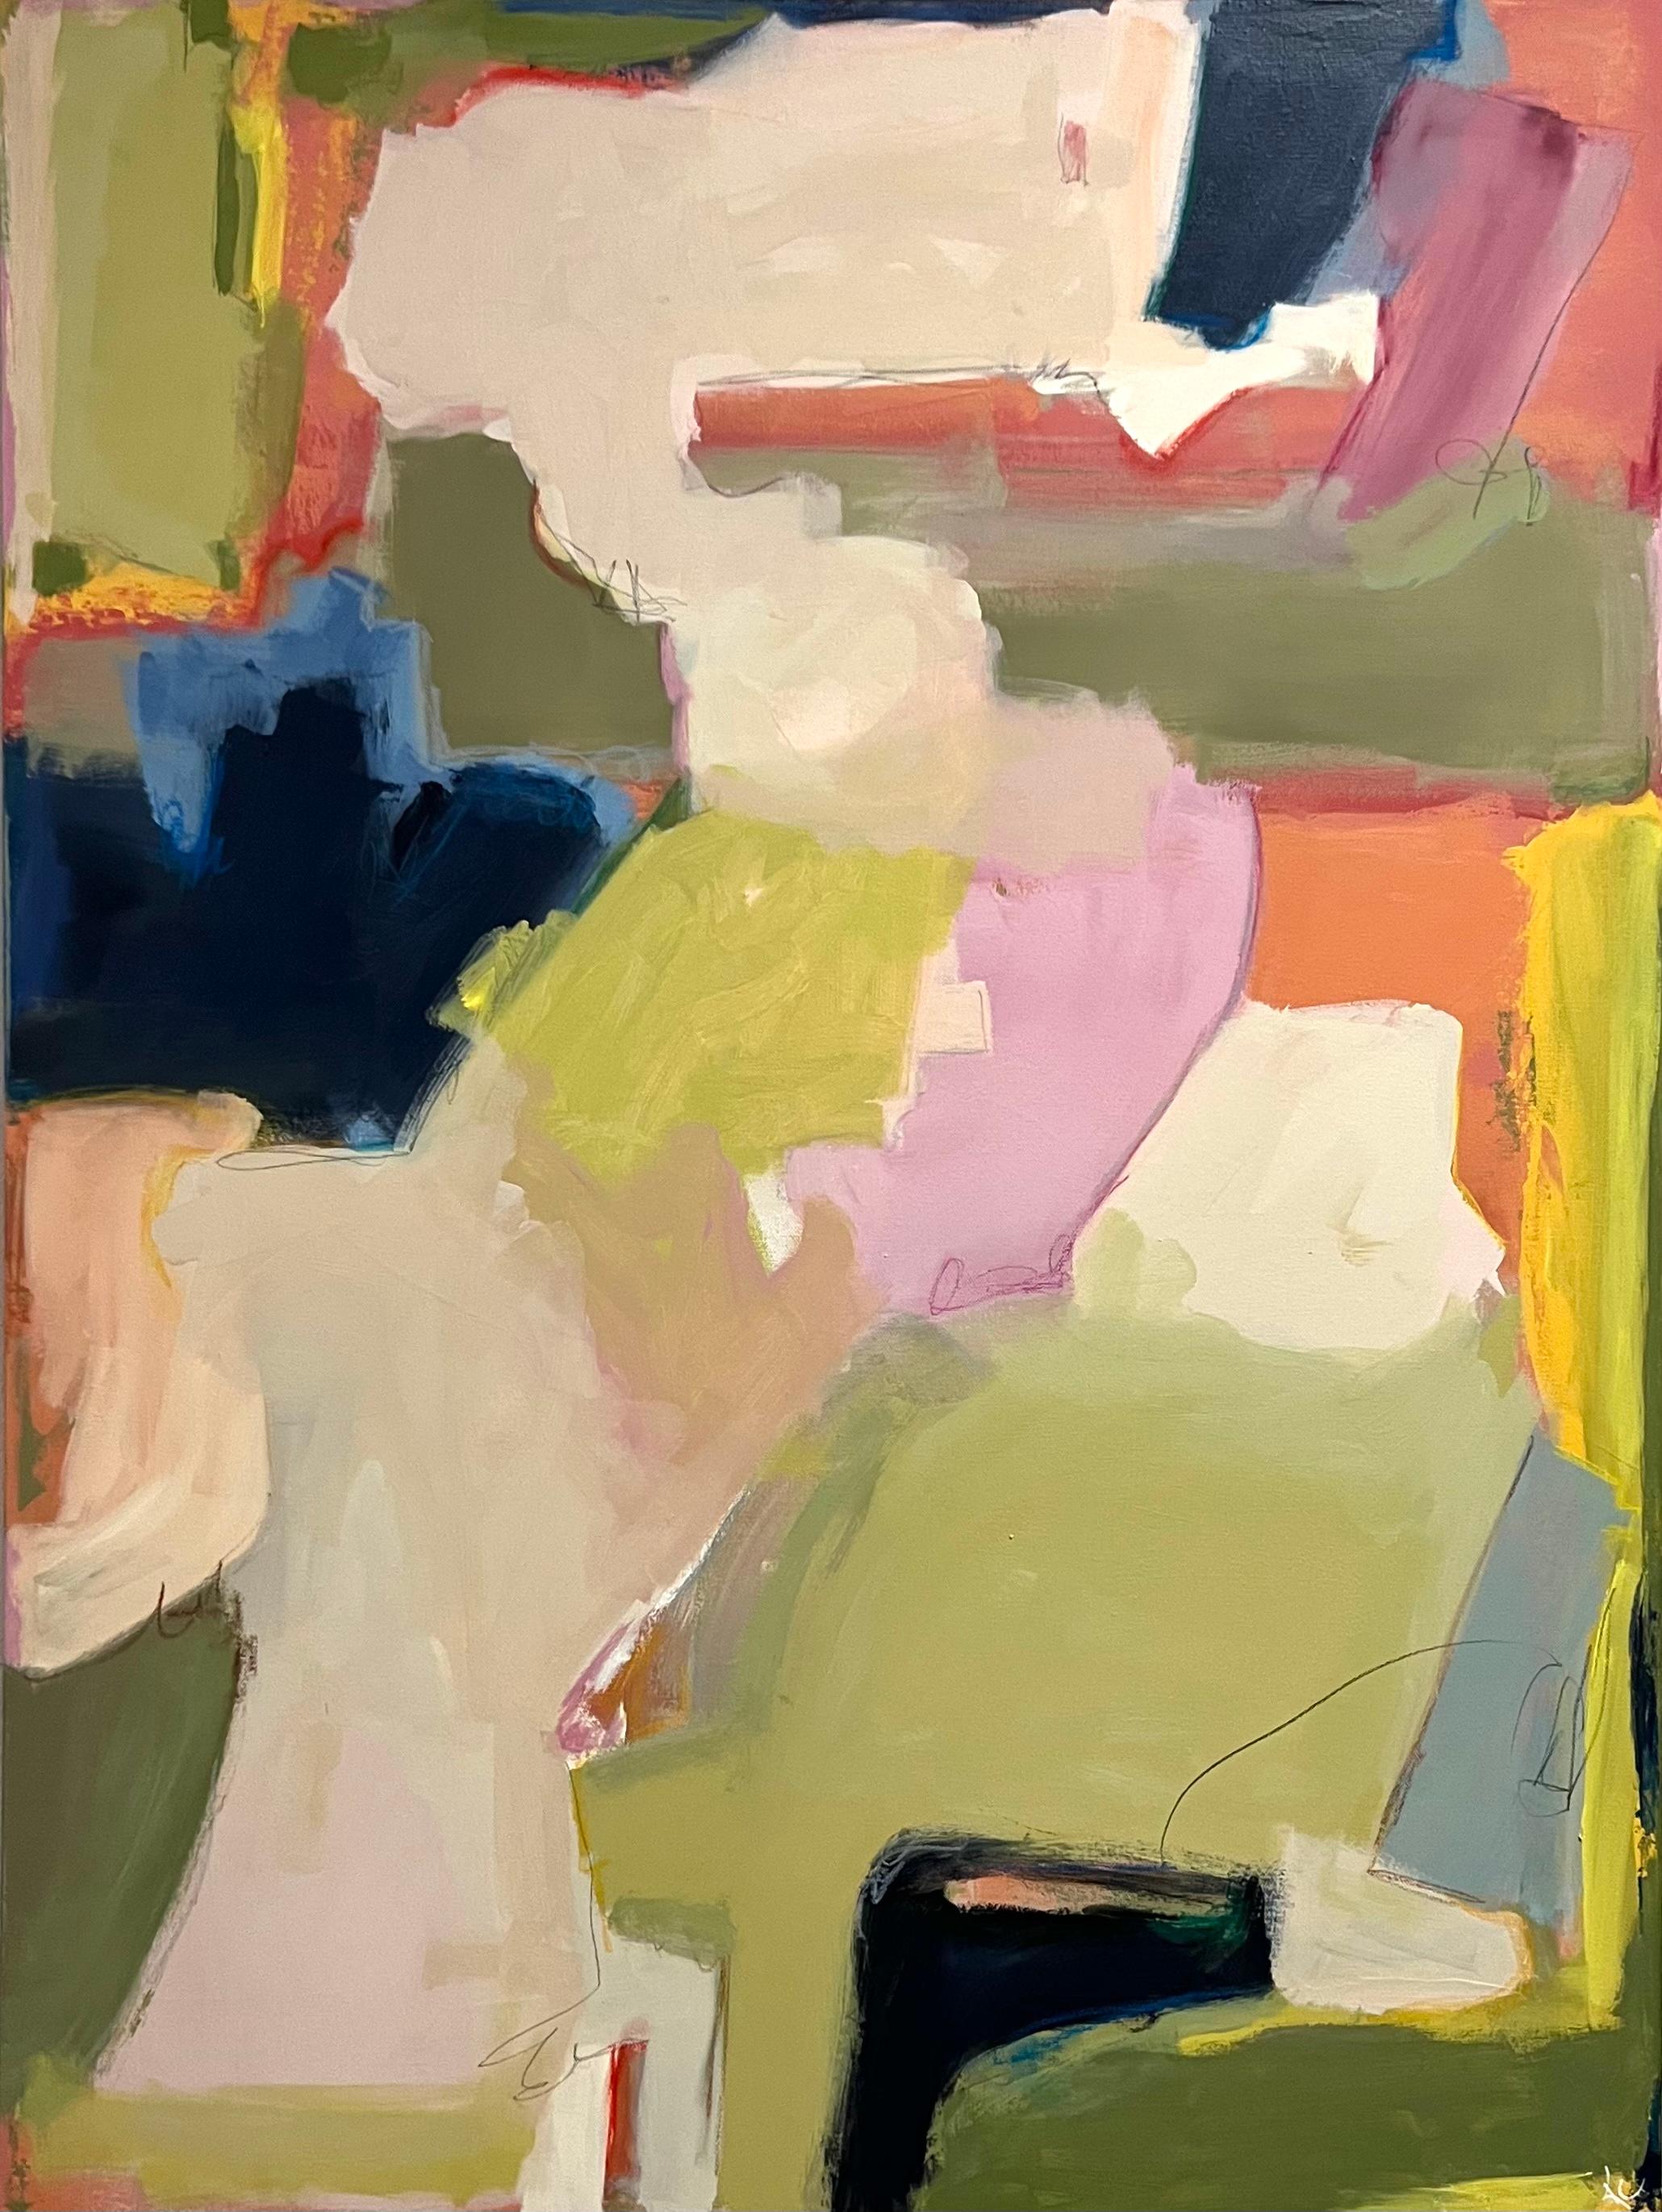 Kelley Carman Abstract Painting - Daily News (Abstract, Gestural, Navy, Pink, Green)